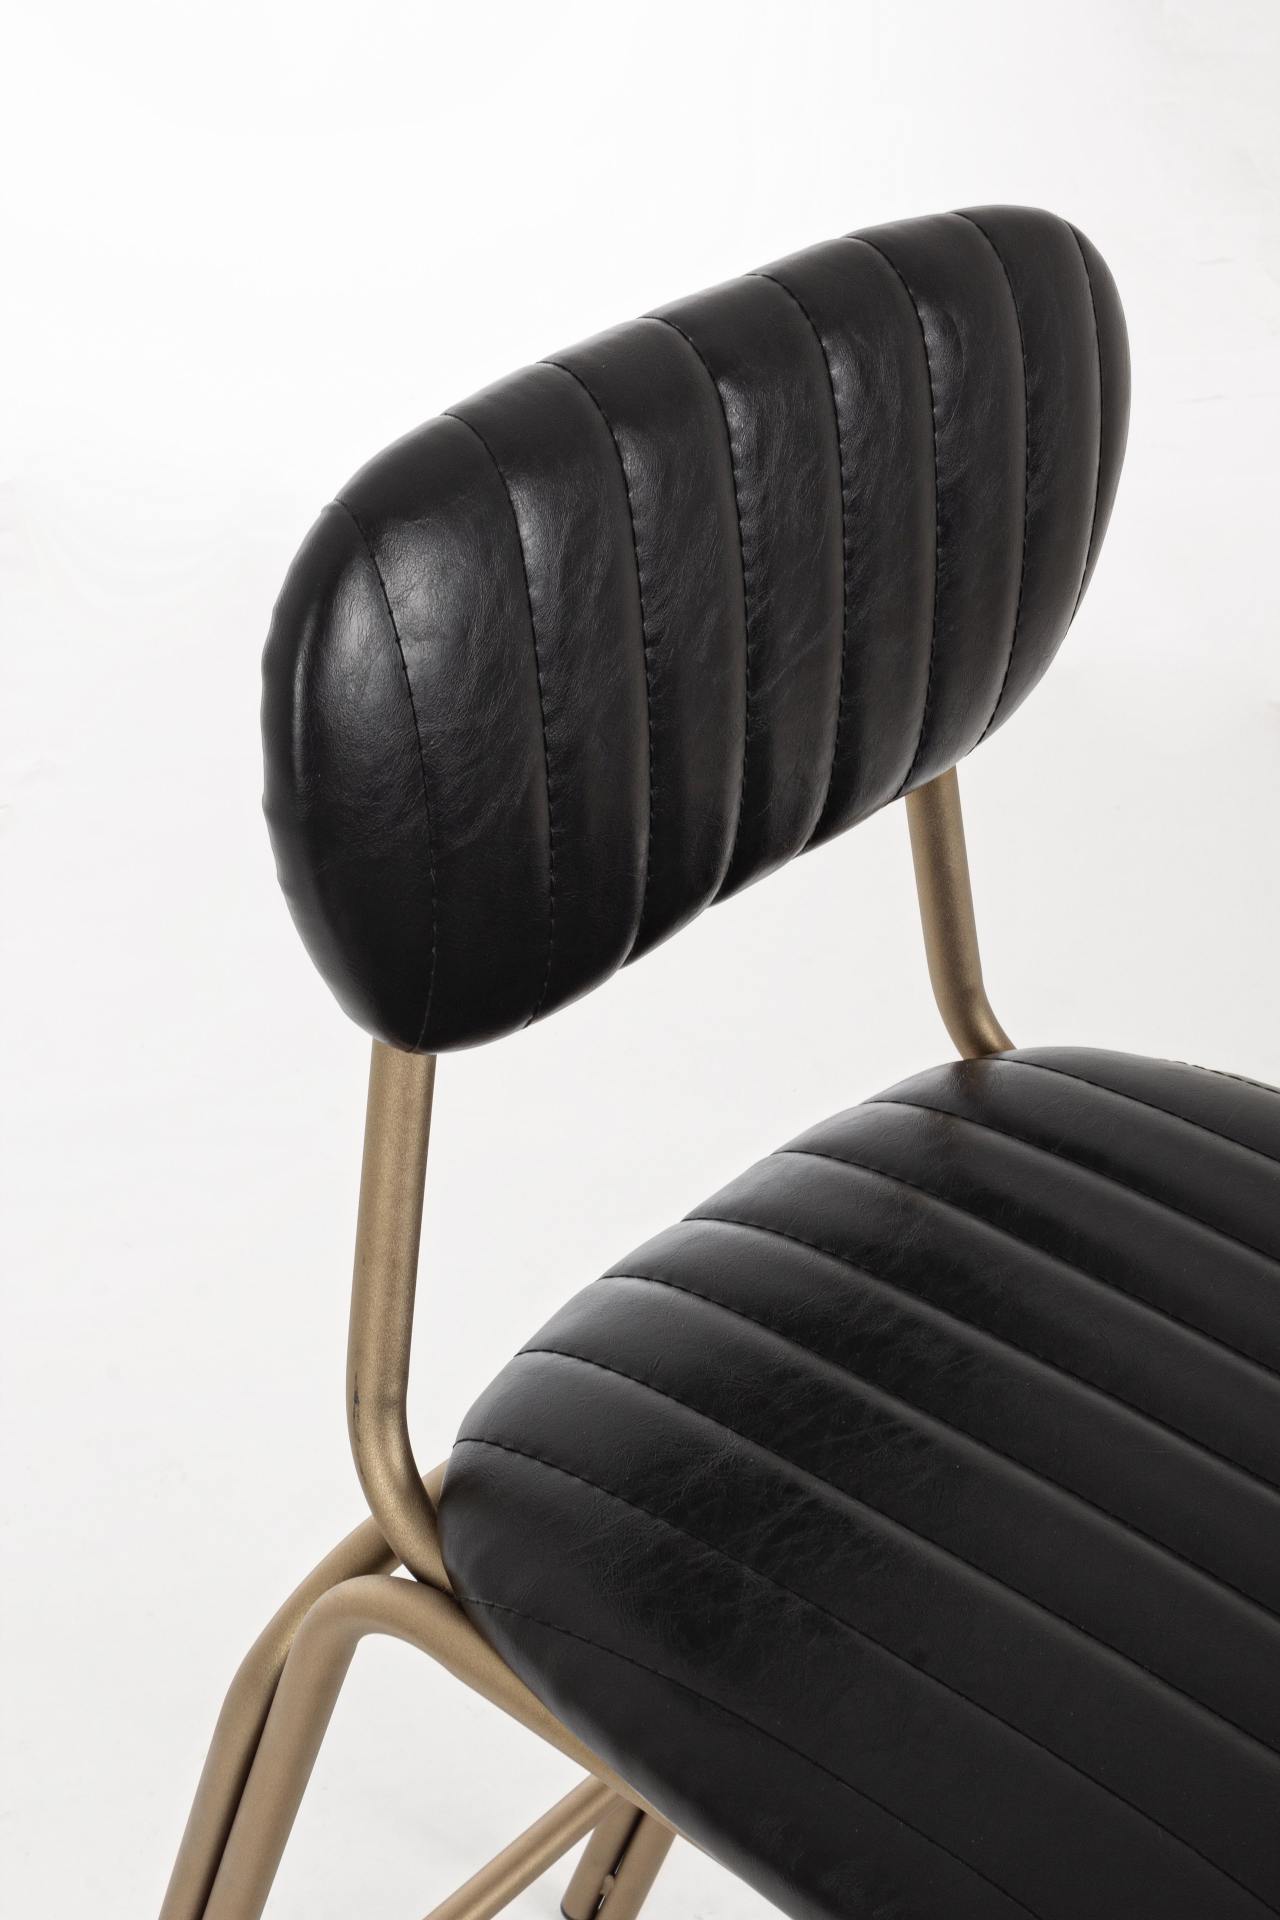 Der Barhocker Addy überzeugt mit seinem industriellem Design. Gefertigt wurde er aus Kunstleder, welches einen schwarzen Farbton besitzt. Das Gestell ist aus Metall und hat eine goldene Farbe. Die Sitzhöhe des Hockers beträgt 73 cm.